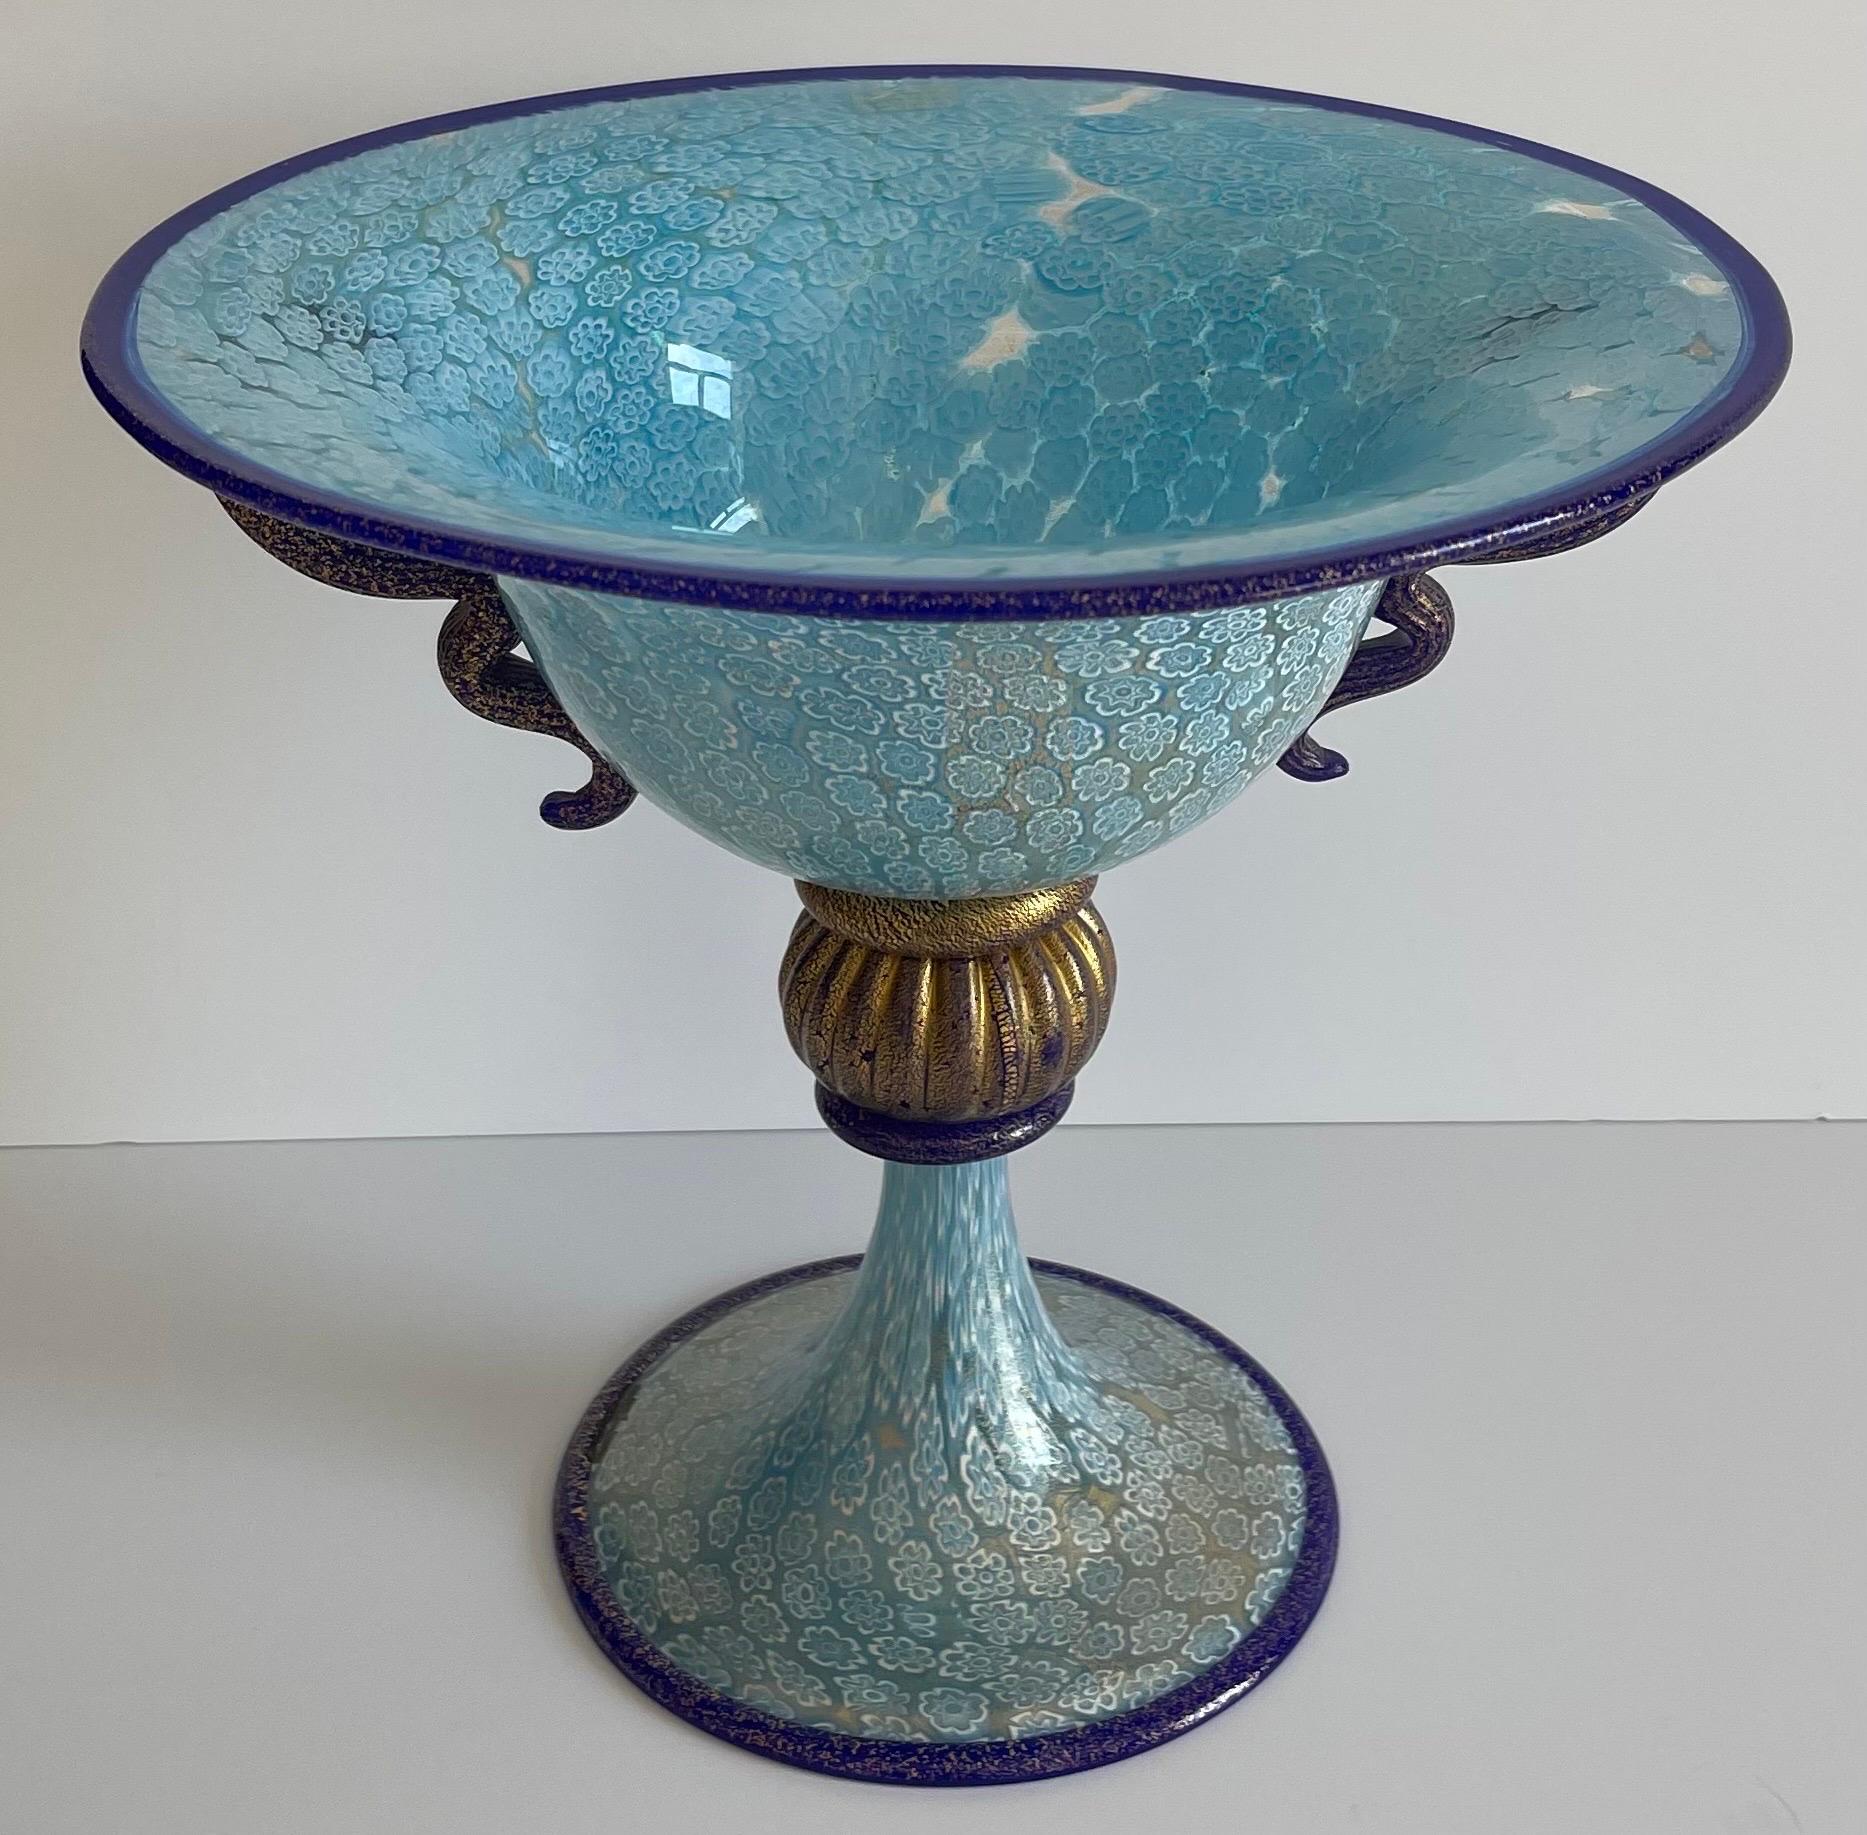 Murano Gambaro & Poggi sky blue blow glass millefiori footed bowl. Curvy cobalt blue blown glass handles. Gold swirled flecks throughout. Gambaro & Poggi brand sticker.